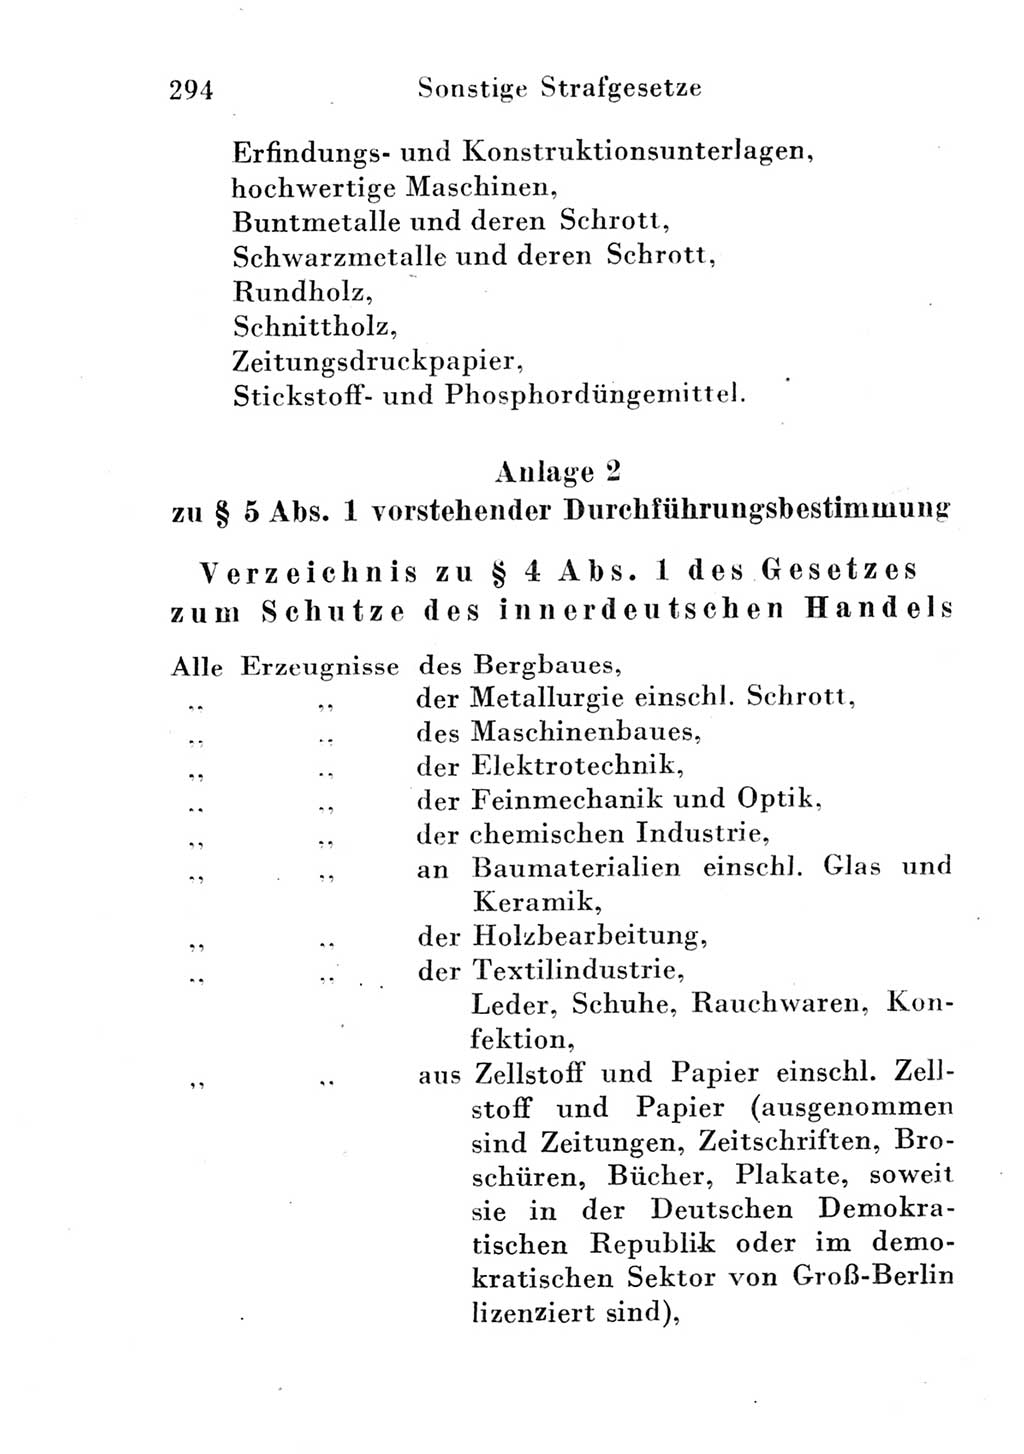 Strafgesetzbuch (StGB) und andere Strafgesetze [Deutsche Demokratische Republik (DDR)] 1951, Seite 294 (StGB Strafges. DDR 1951, S. 294)